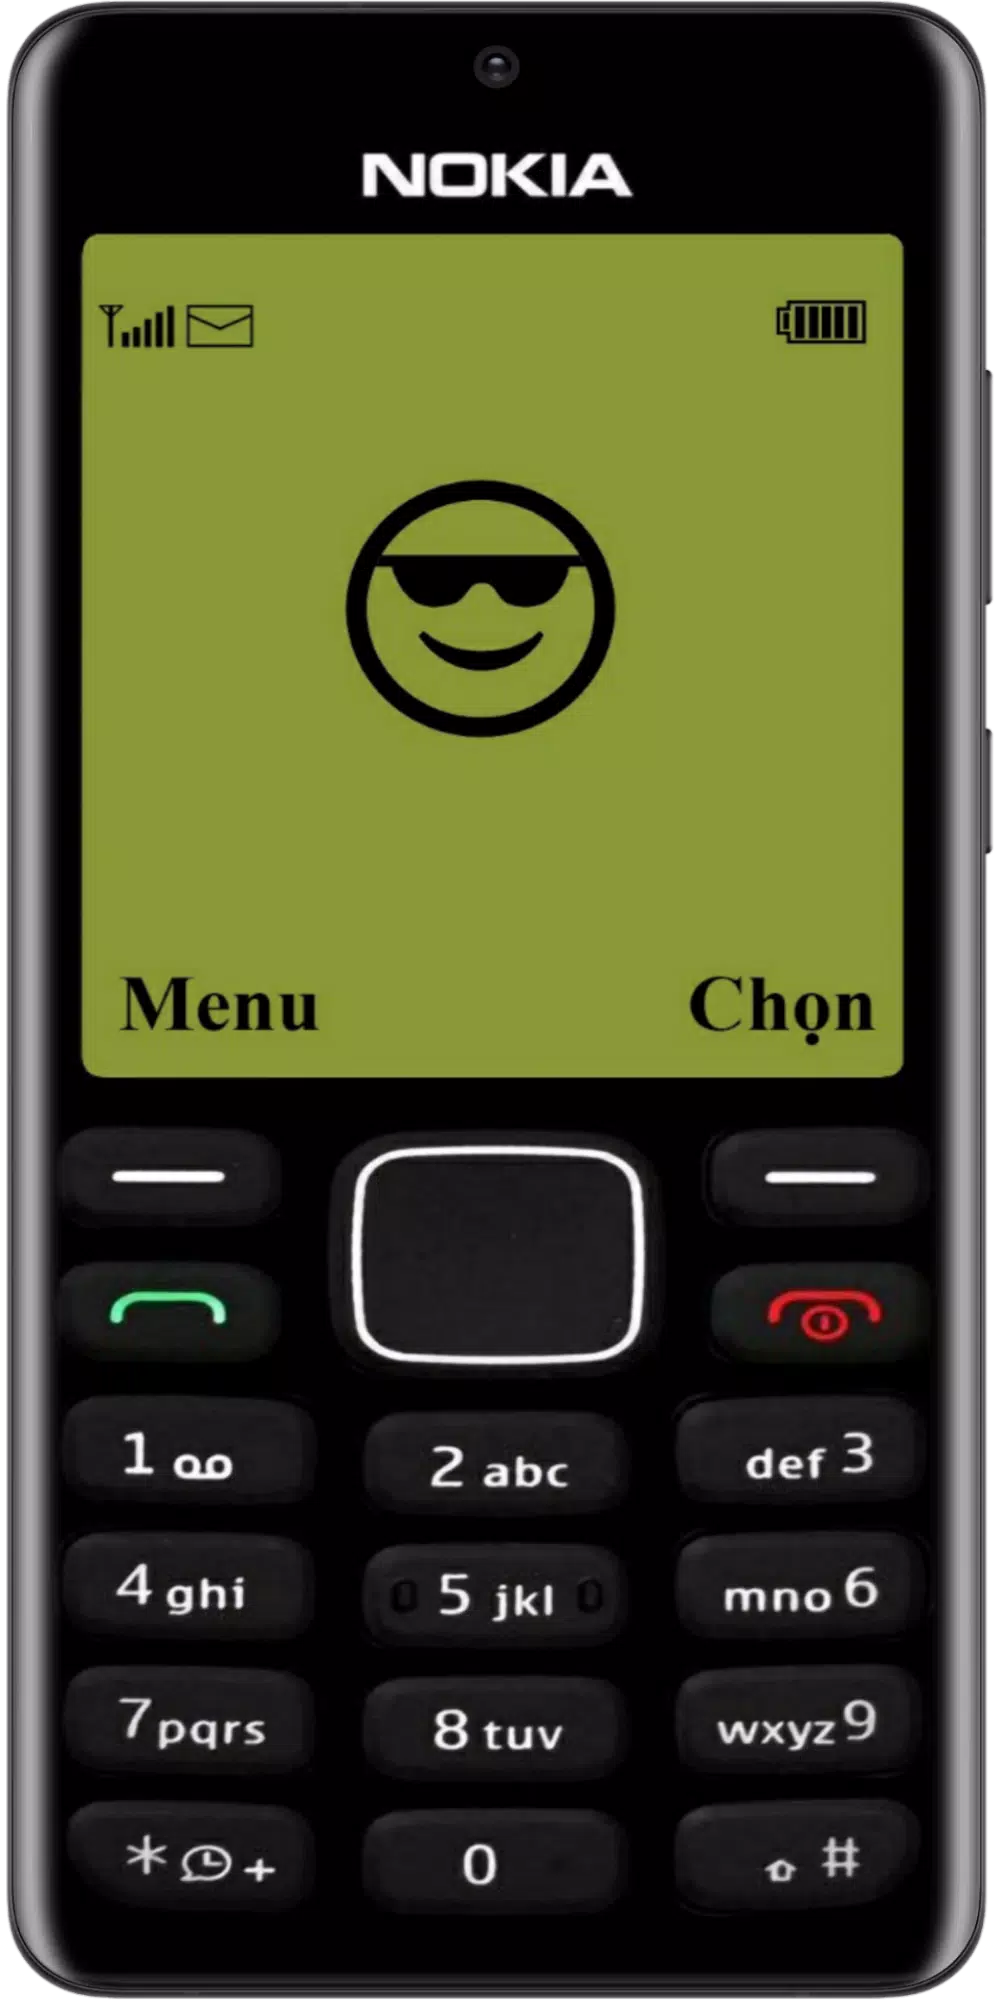 Muốn tận hưởng niềm vui của Nokia cũ? Tải ngay APK trò đùa Simulator cho điện thoại Nokia để trở lại thời hoàng kim. Trò đùa này tràn đầy tiếng cười!